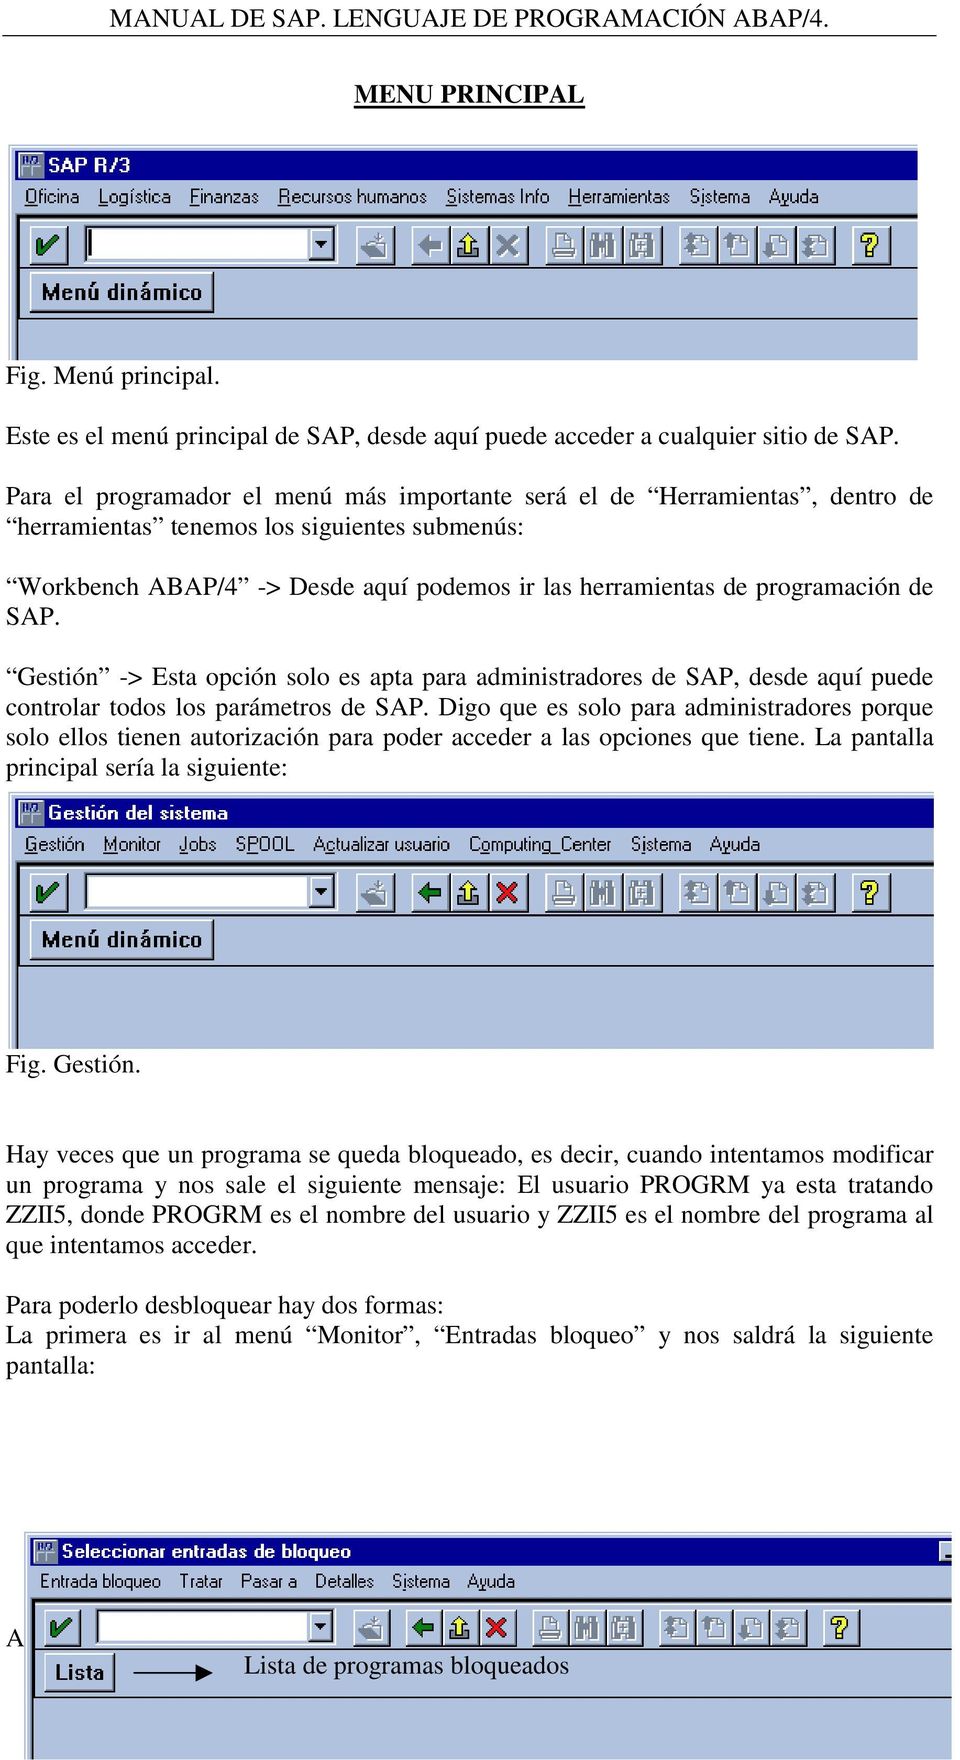 Medalla Asado espalda MANUAL DE SAP. LENGUAJE DE PROGRAMACIÓN ABAP/4. - PDF Free Download